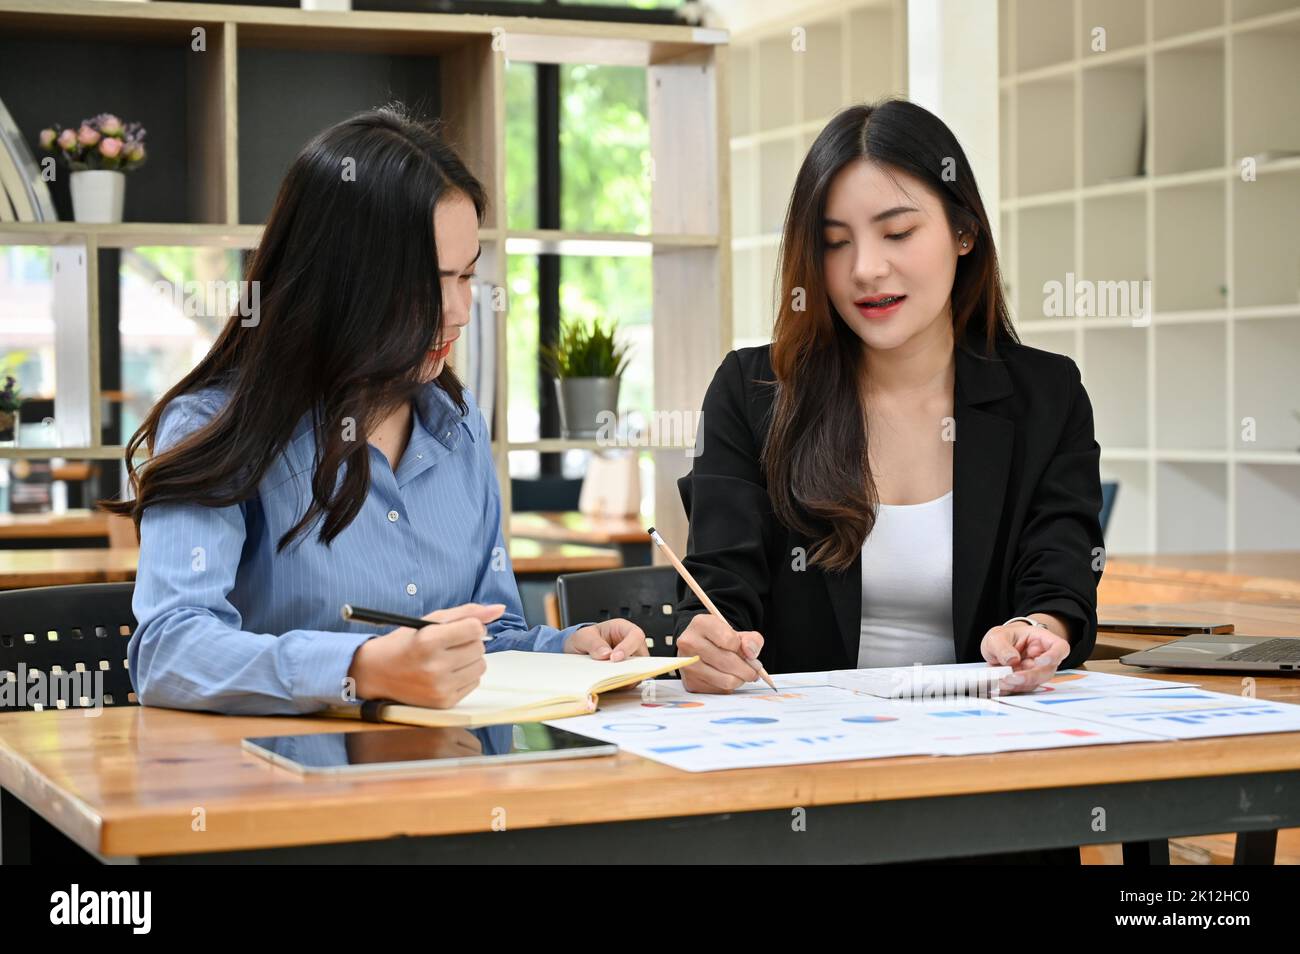 Professionelle und schöne junge asiatische Geschäftsfrau oder Finanzmanagerin, die ihr neues Personal im Büro ausbilden kann. Stockfoto